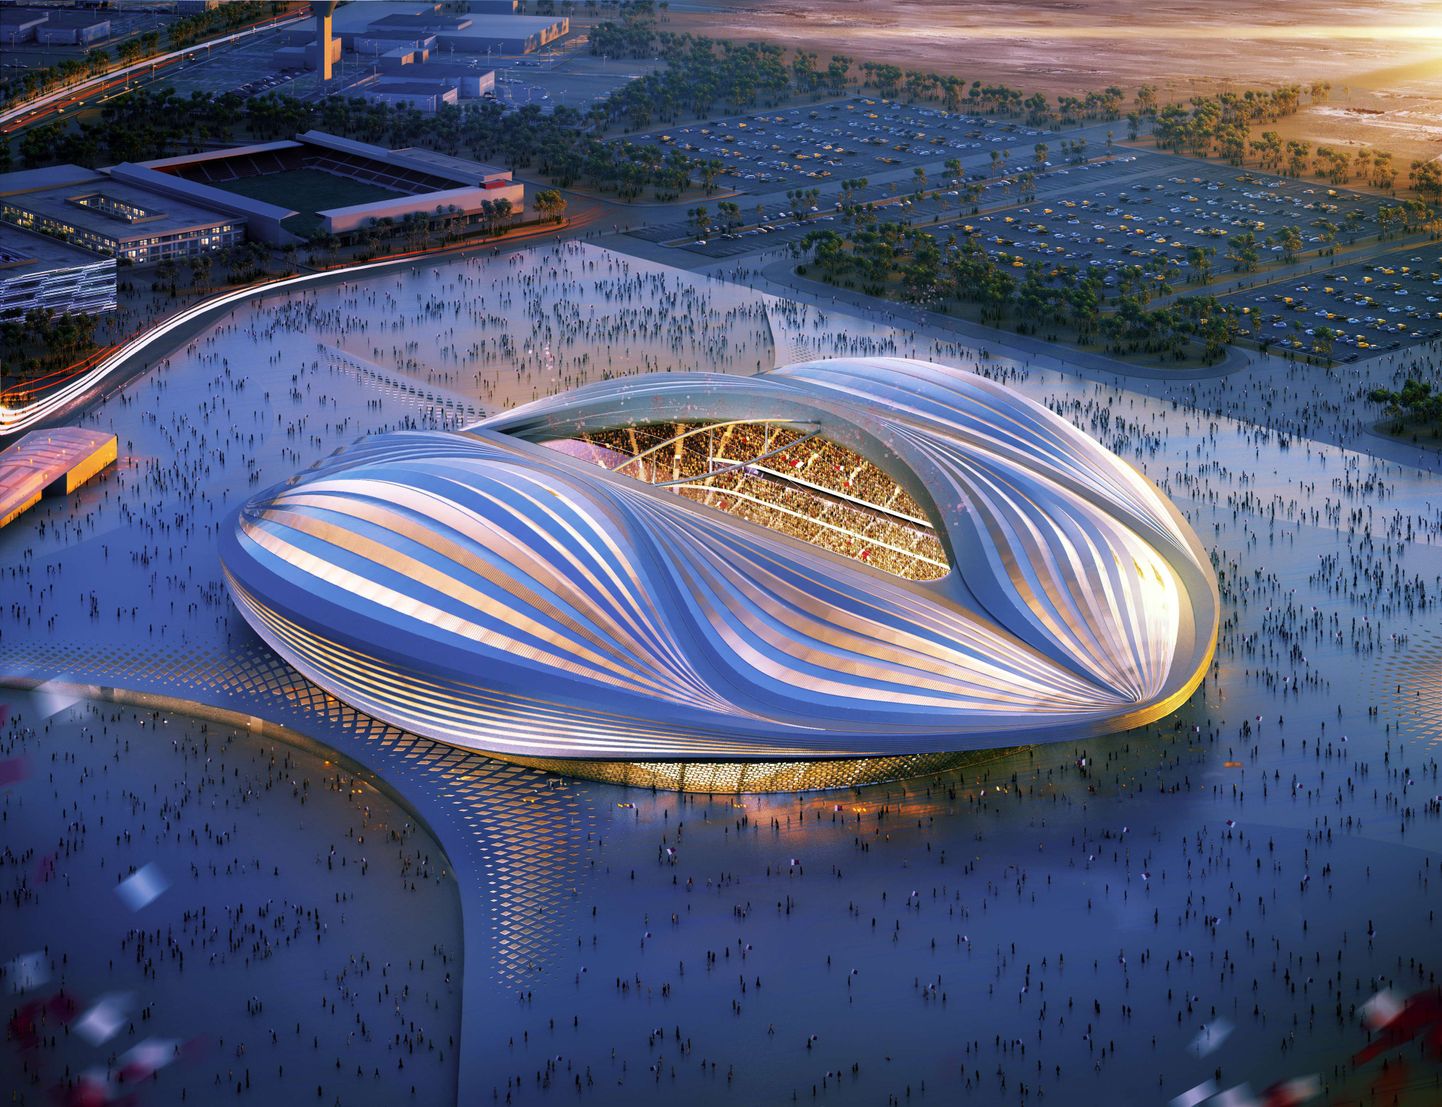 Эскиз стадиона Al-Wakrah (Аль-Вакра) в Катаре, на котором планируется проводить матчи ЧМ-2022.